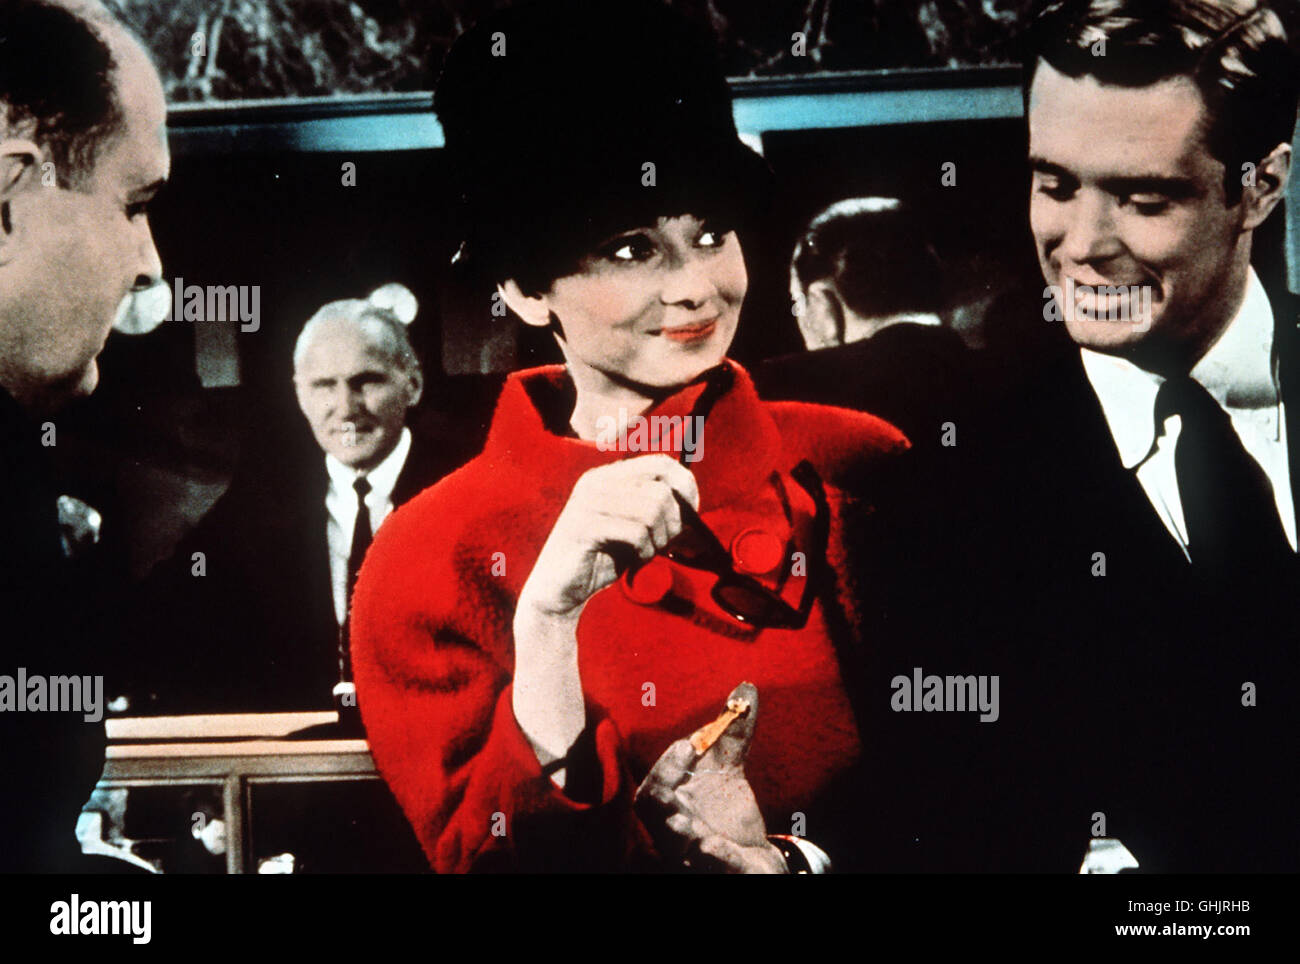 Breakfast at Tiffany's USA 1960 - Blake Edwards mourir 18 jährige Holly Golightly (Audrey Hepburn) kommt aus der Provinz nach New York, um sich einen Millionär zu angeln. Doch schließlich landet sie in den Armen des mittellosen Schriftstellers Paul (GEORGE PEPPARD). Regie : Blake Edwards aka. Breakfast At Tiffany's Banque D'Images